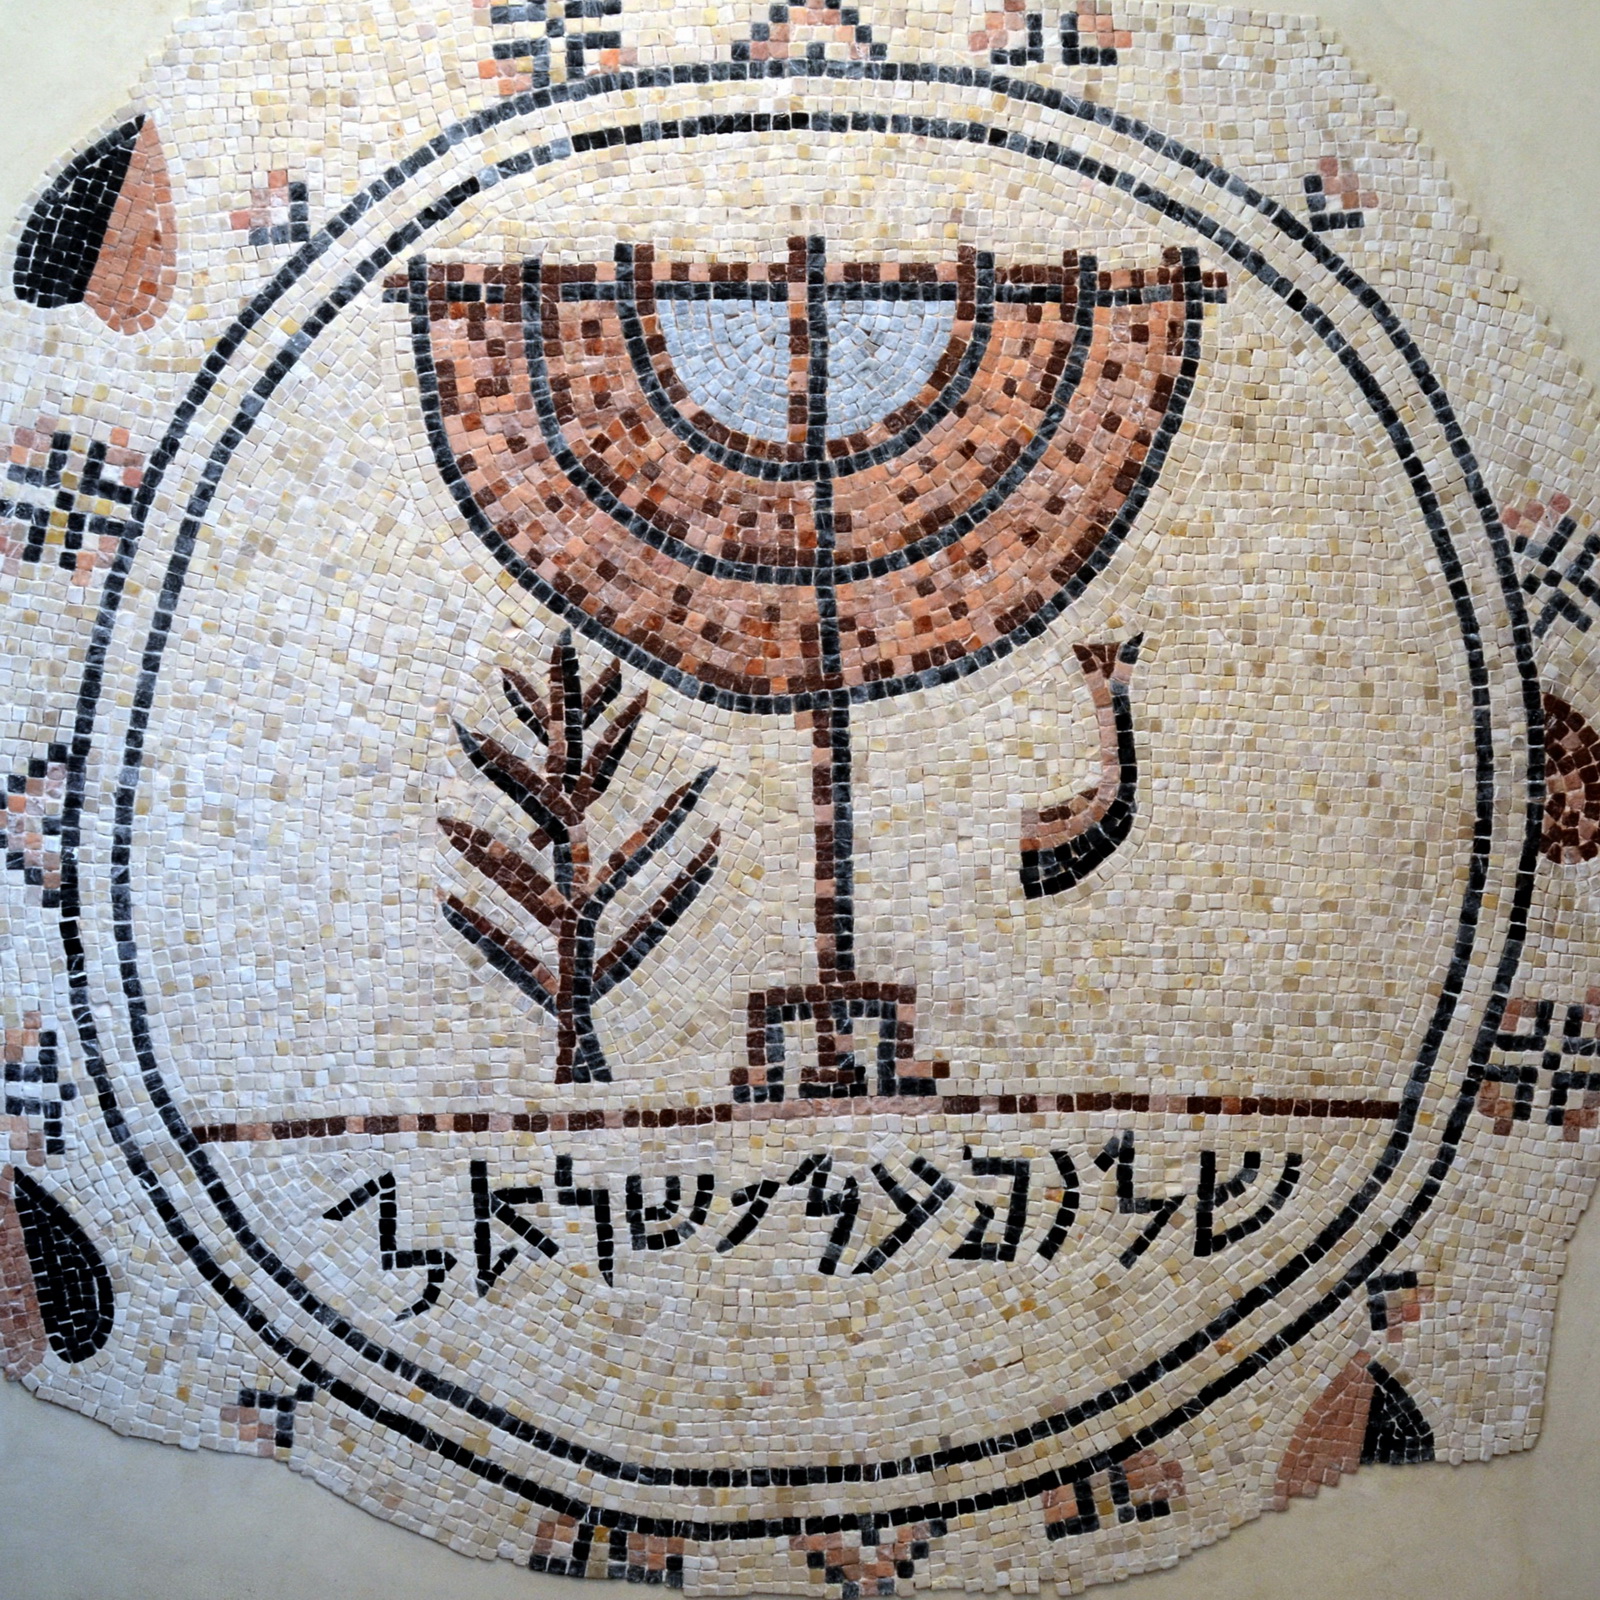 בית הכנסת ביריחו - מרכז הפסיפס - מנורה וכתובת 